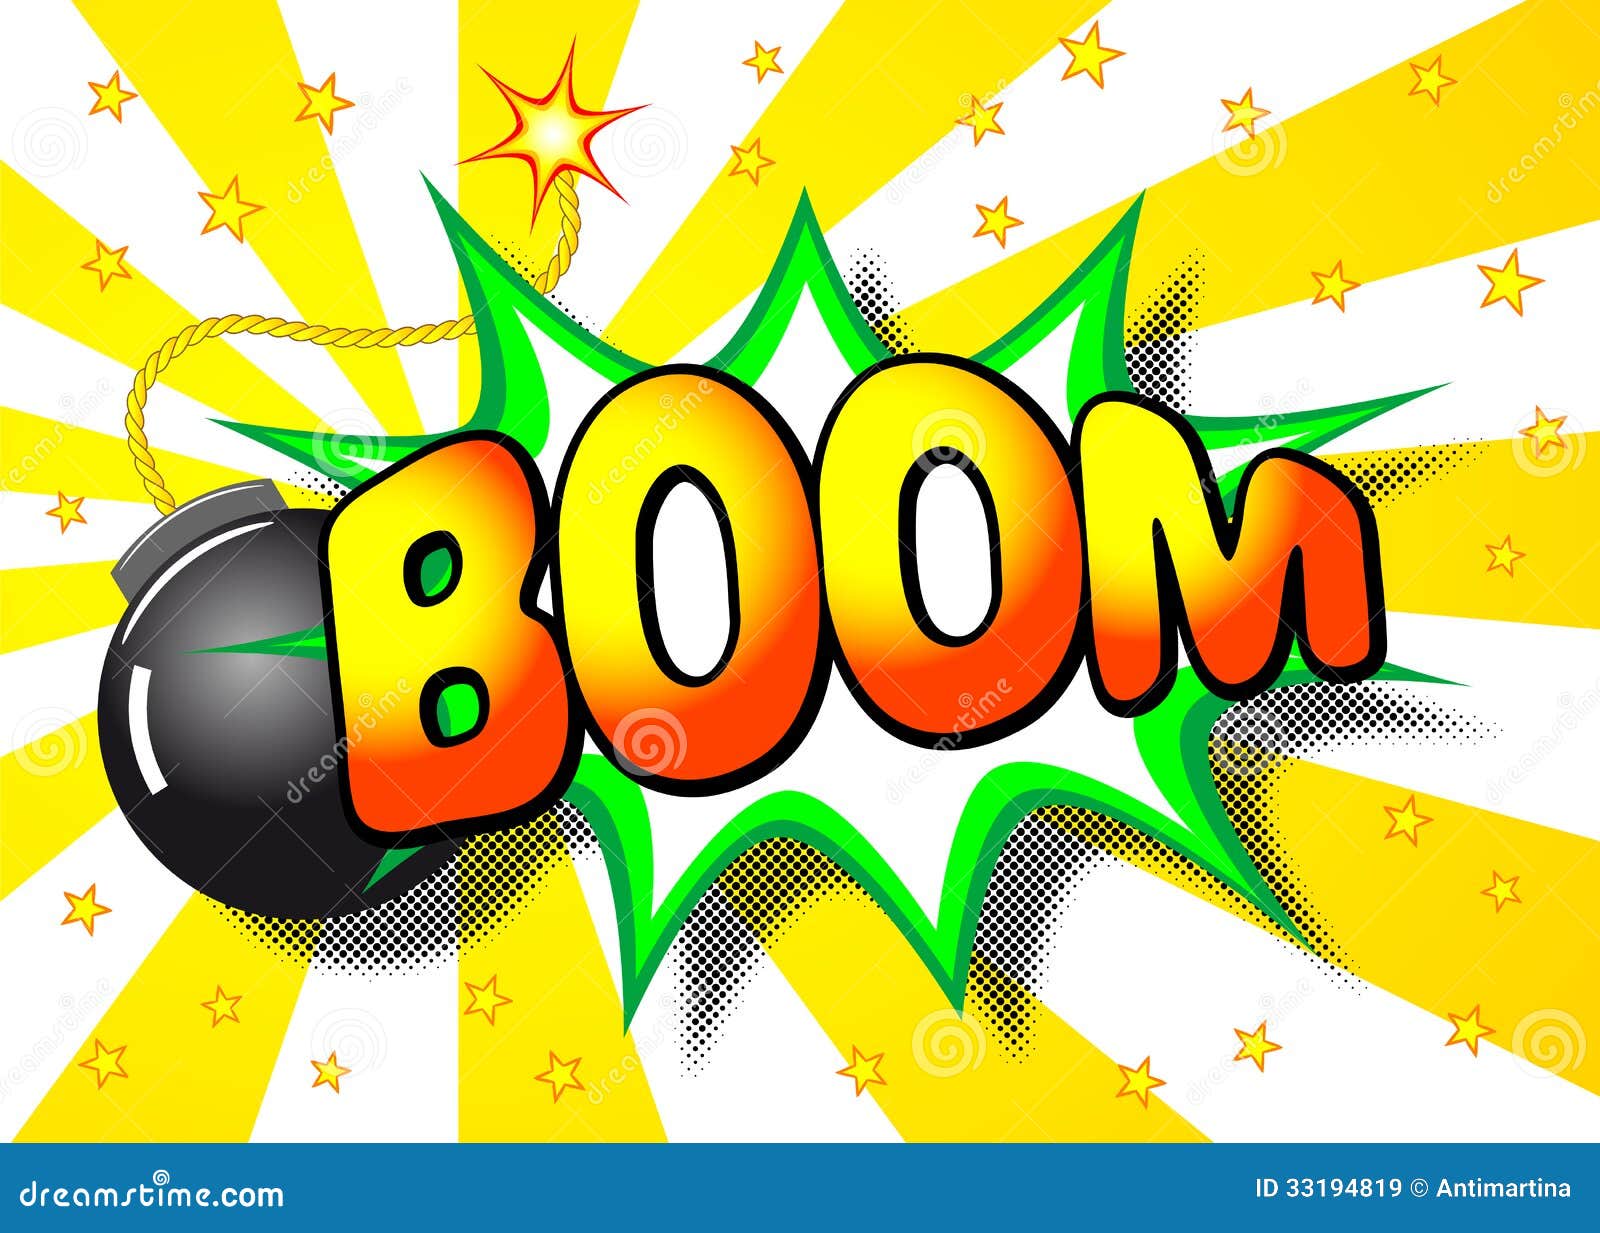 boom-explosion-vector-illustration-cartoon-word-33194819.jpg